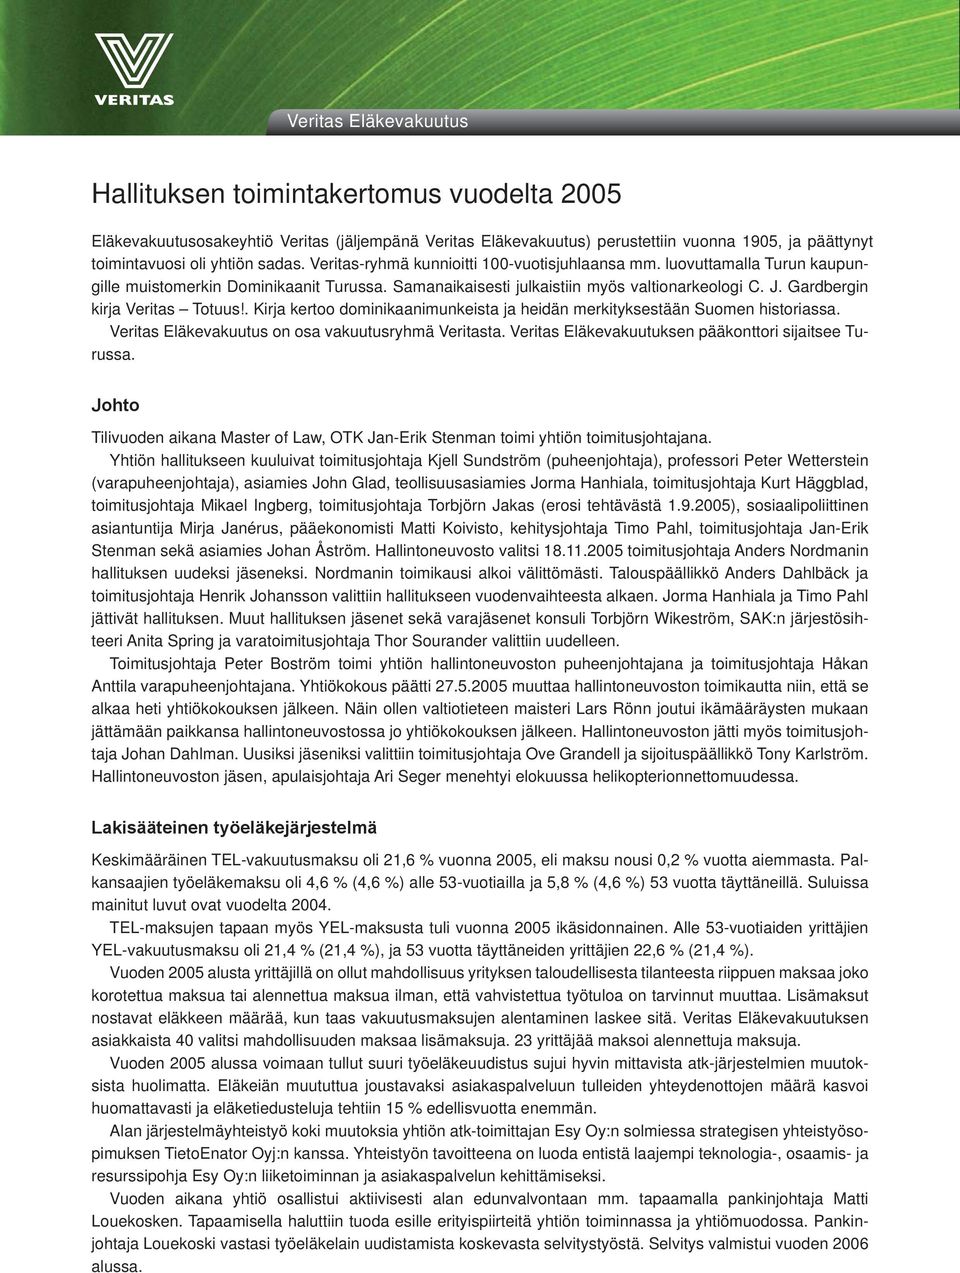 Gardbergin kirja Veritas Totuus!. Kirja kertoo dominikaanimunkeista ja heidän merkityksestään Suomen historiassa. Veritas Eläkevakuutus on osa vakuutusryhmä Veritasta.